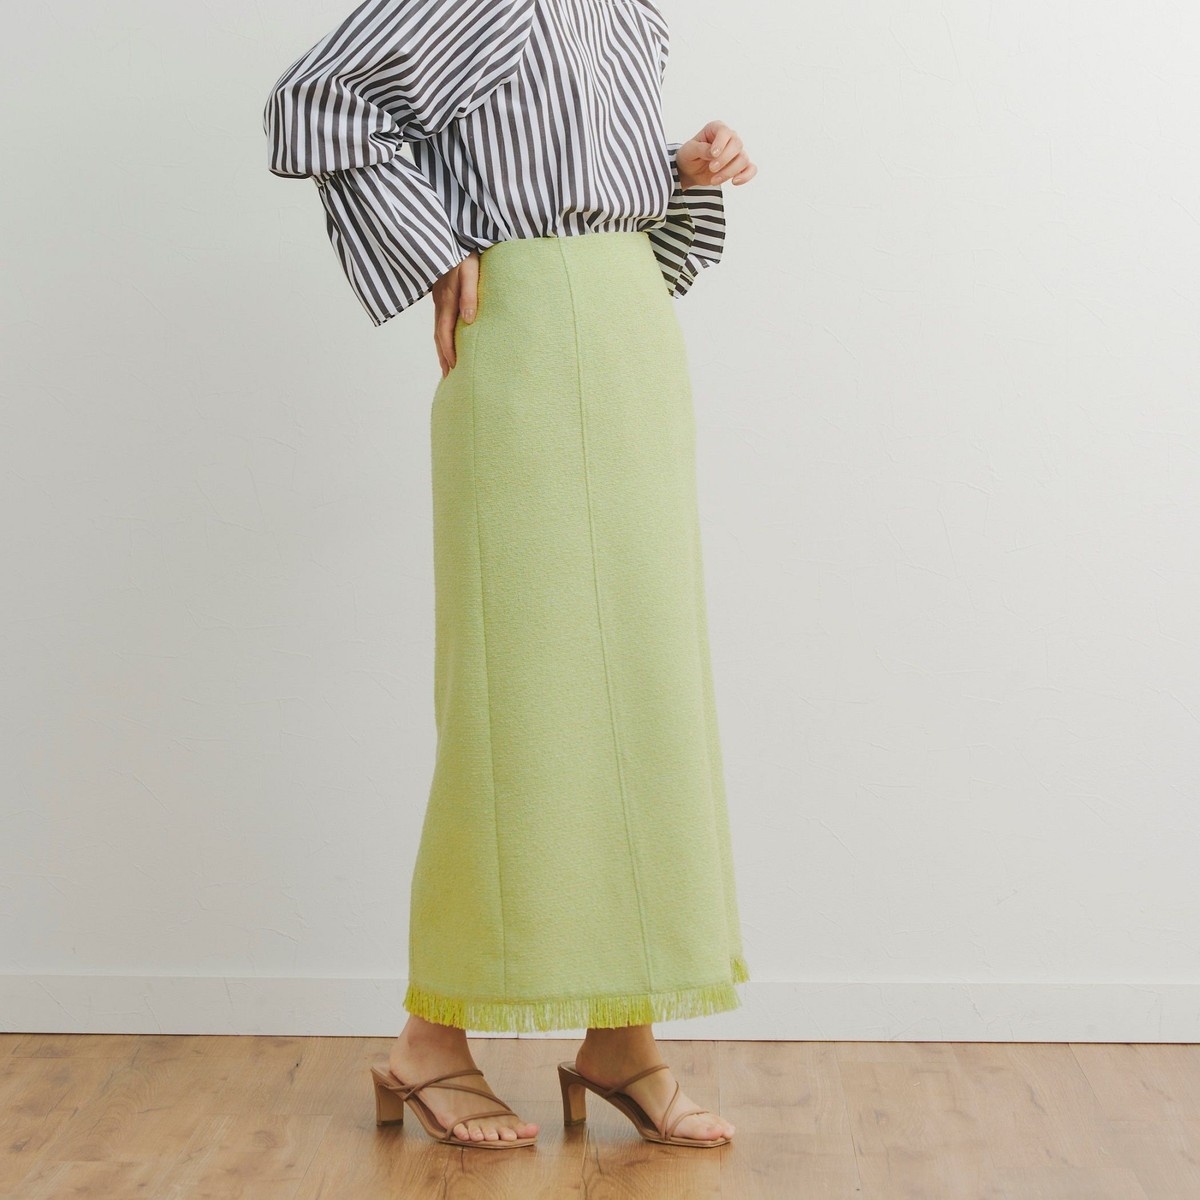 ツイード スカート の通販 | ファッション通販 マルイウェブチャネル